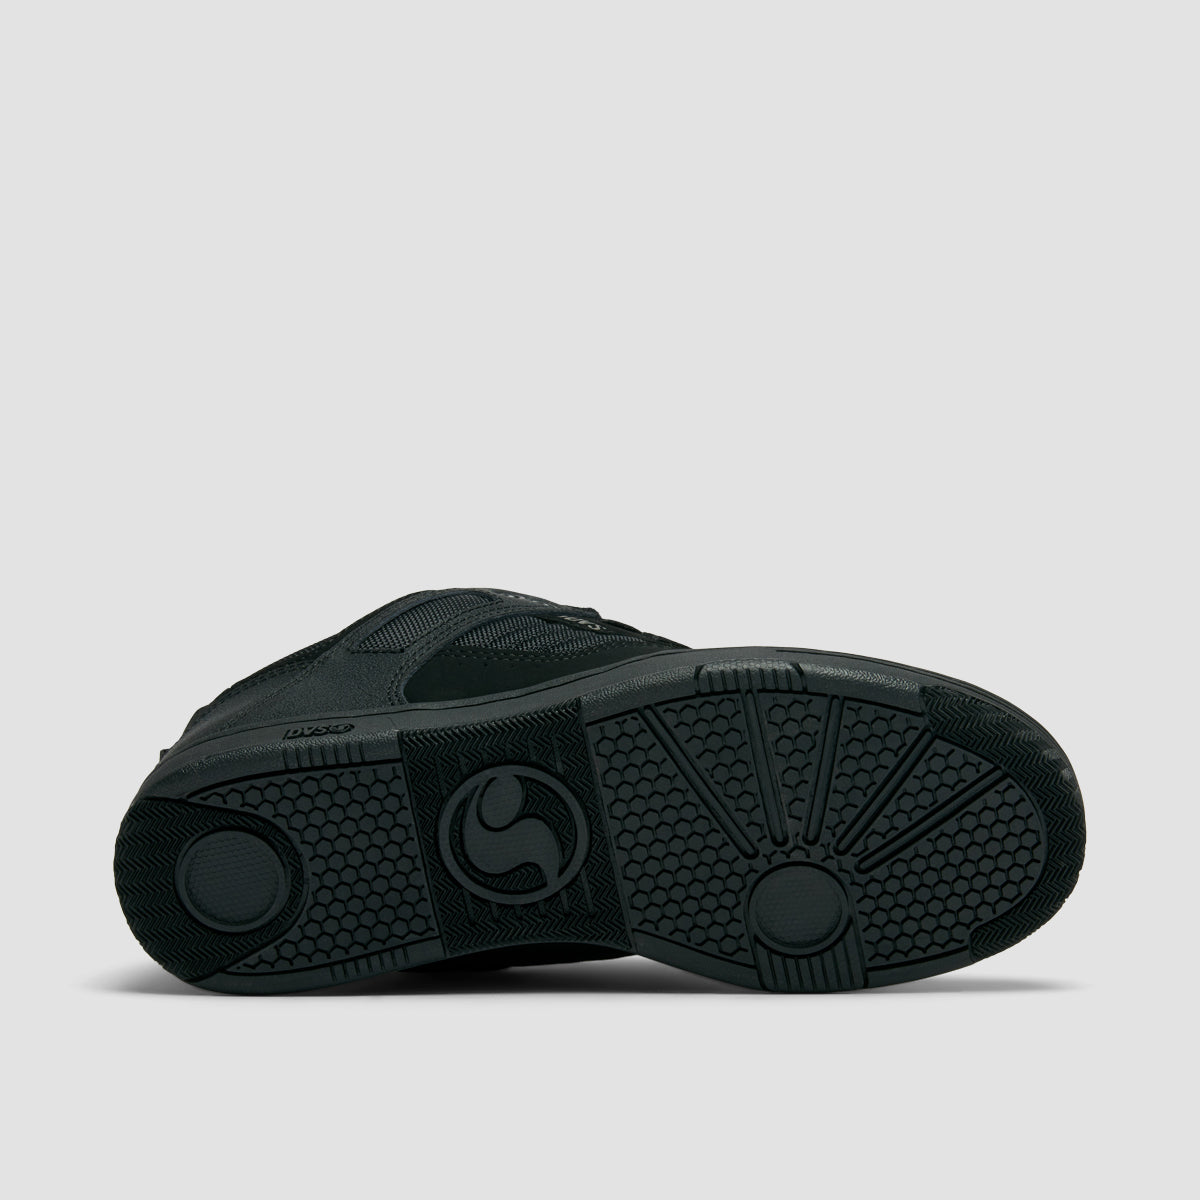 DVS Comanche Shoes - Charcoal/Black/White Nubuck